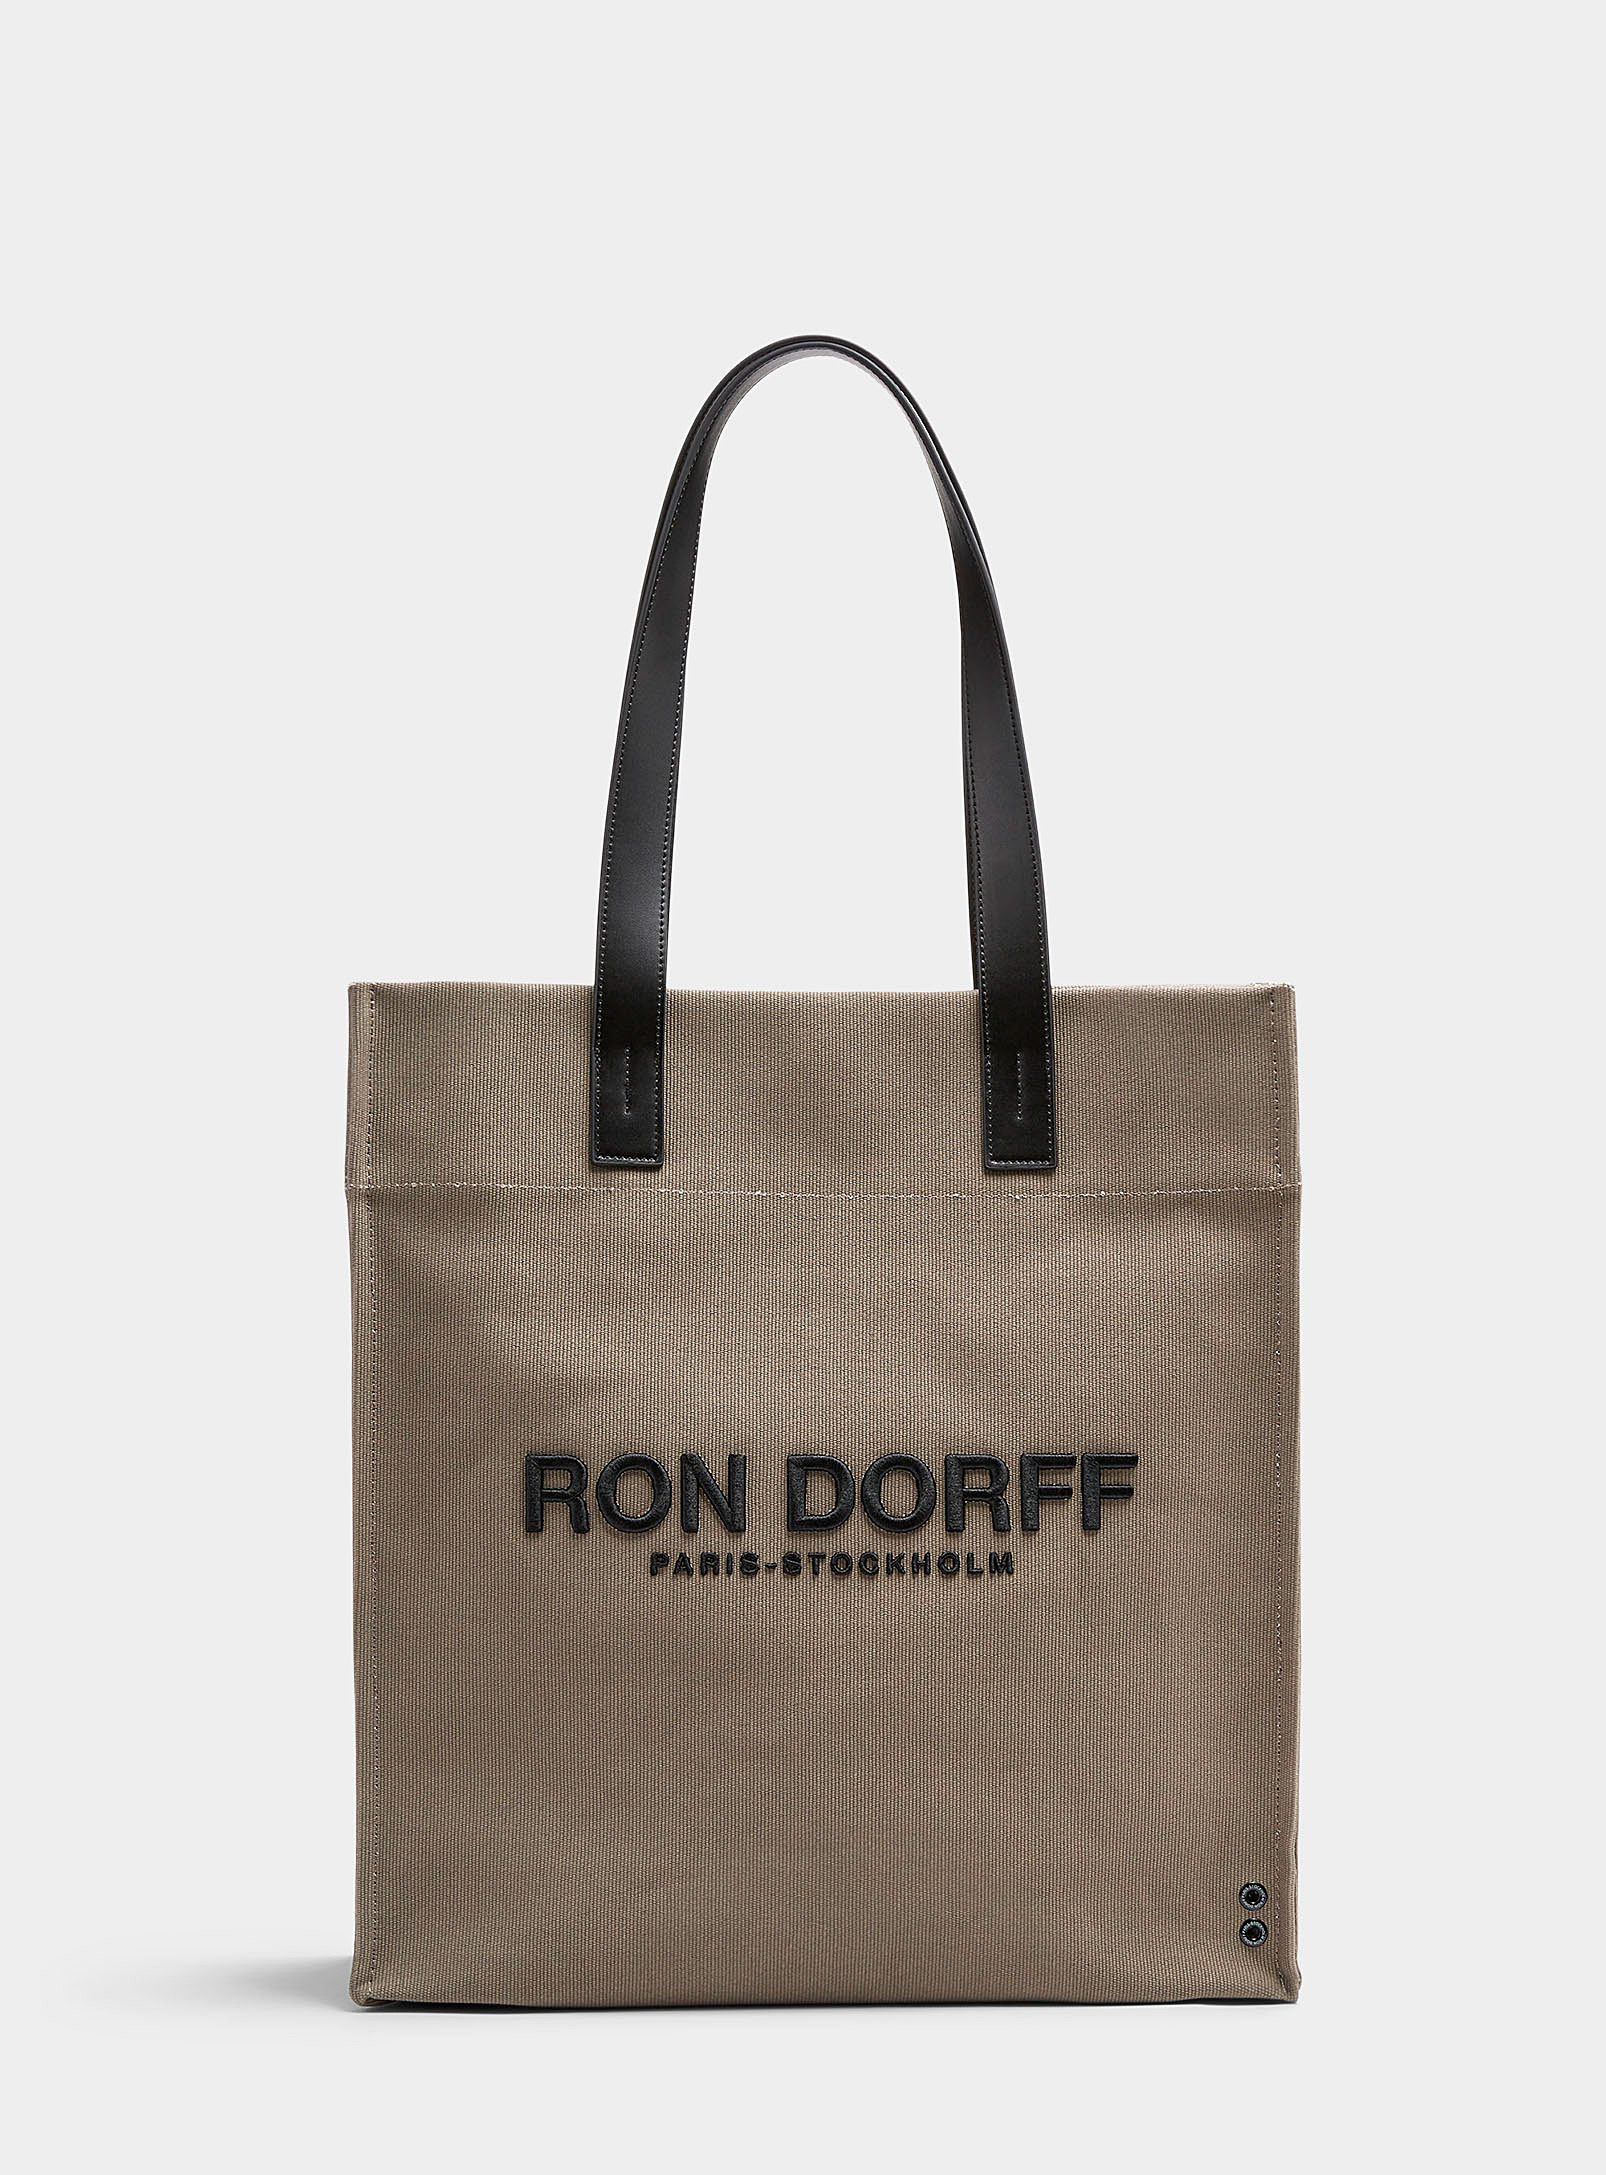 Ron Dorff - Men's City tote bag